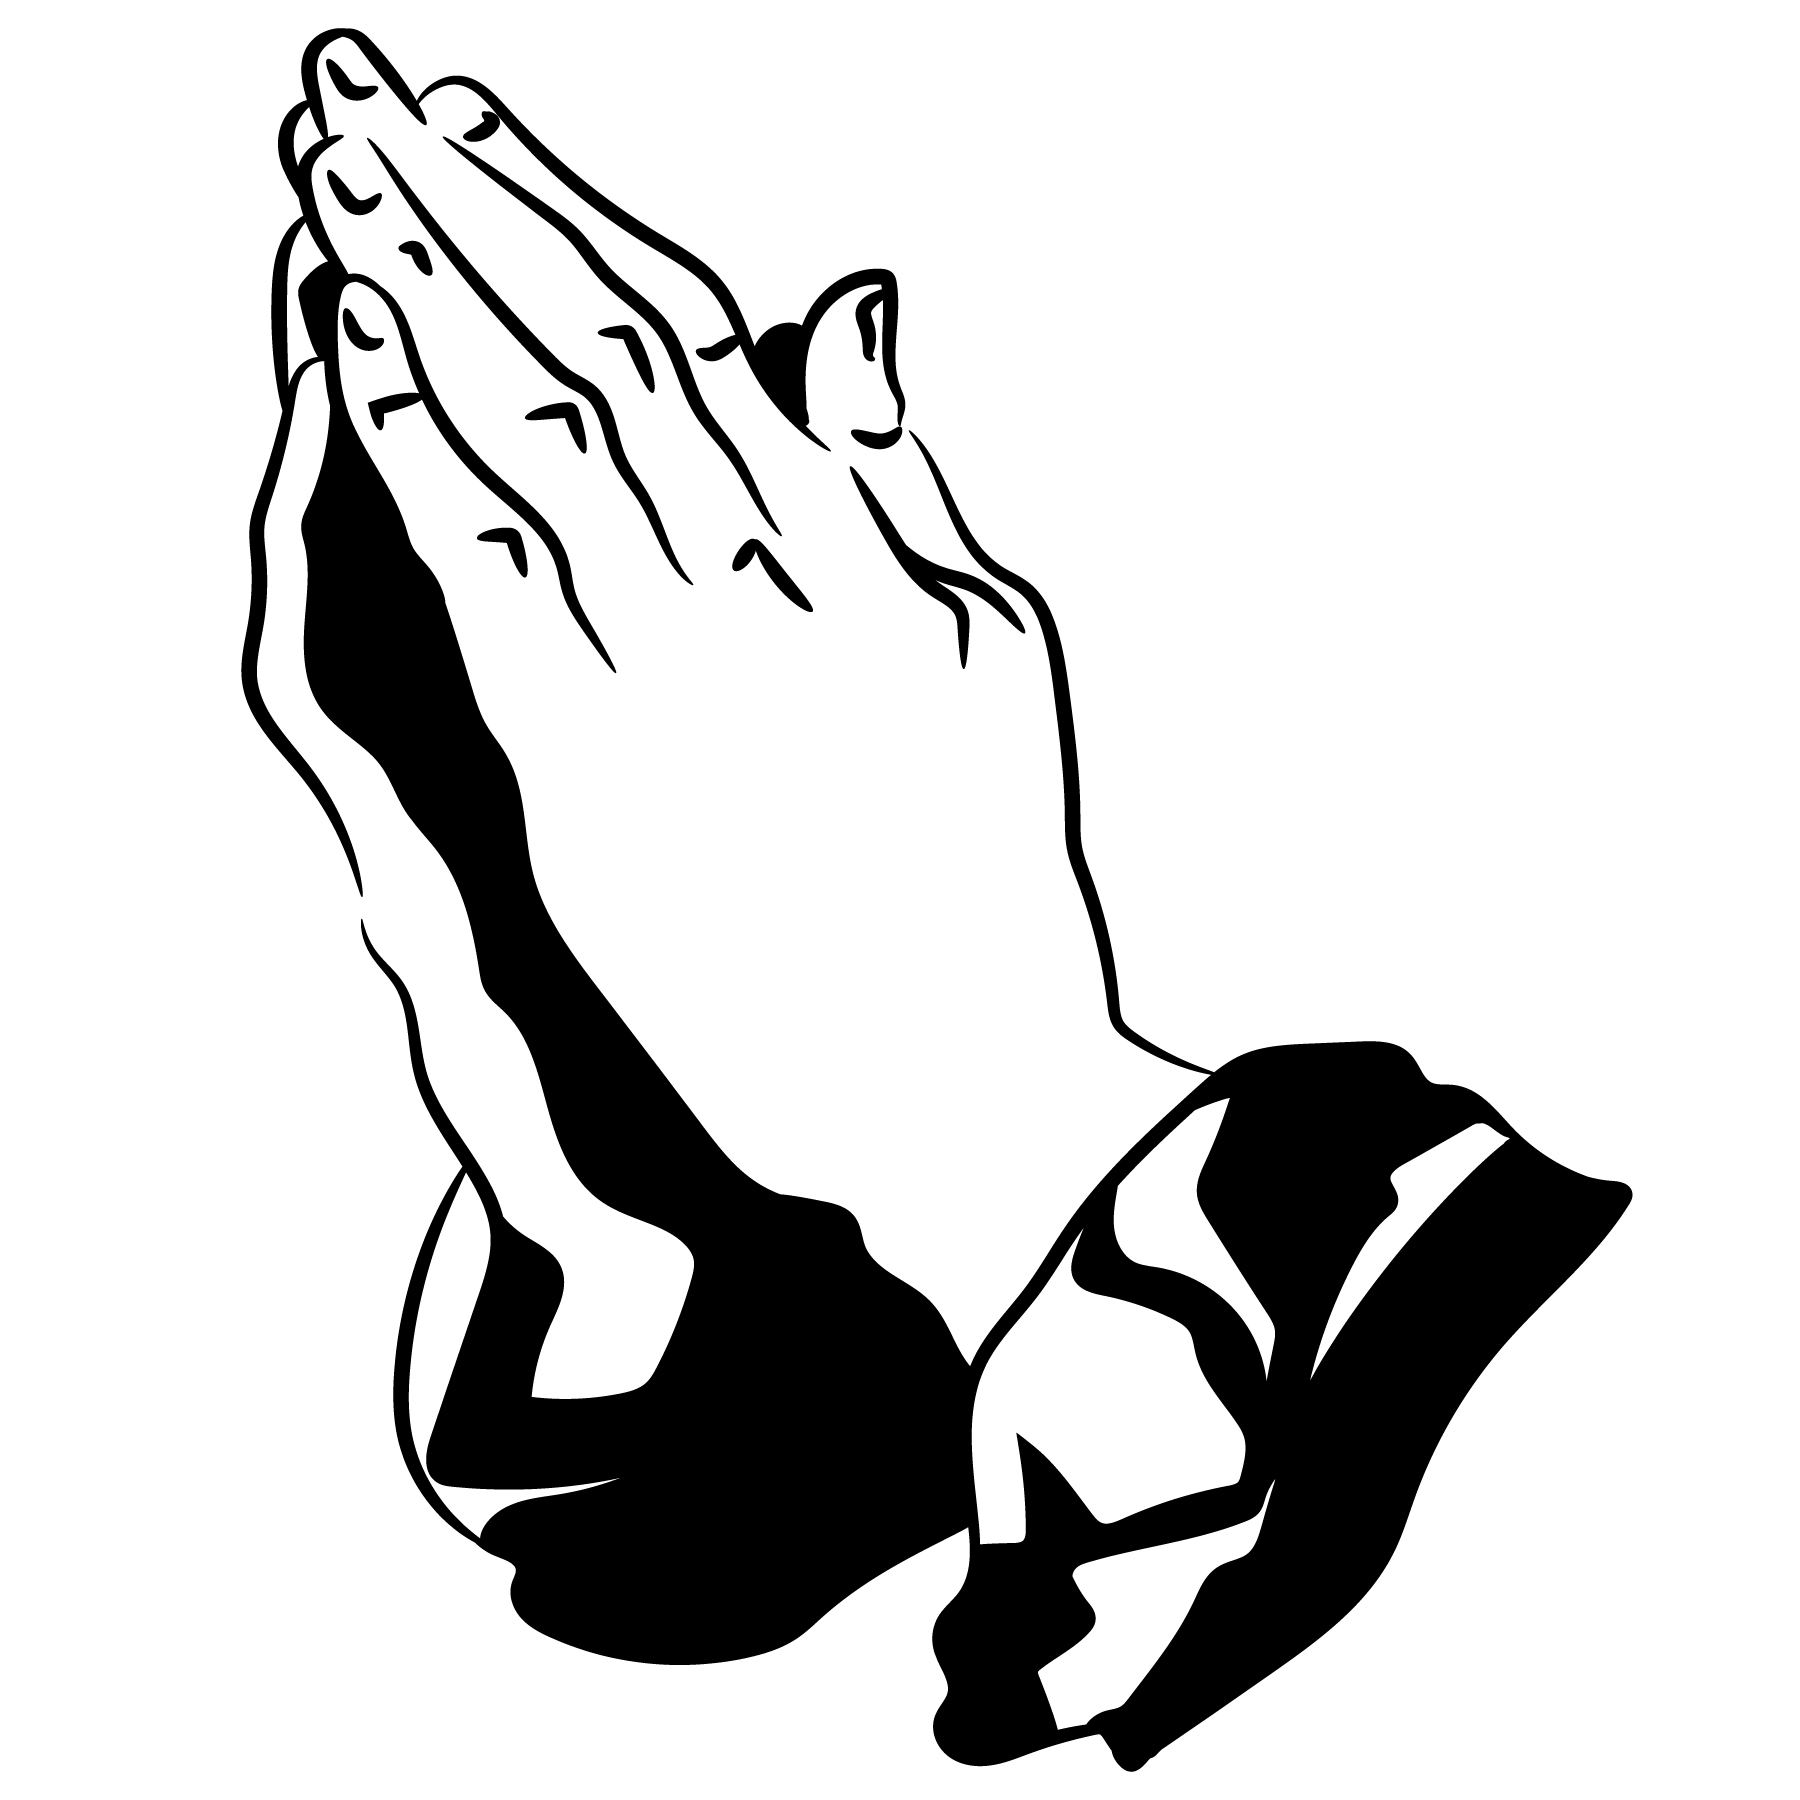 Download praying hands vector - Download Free Vectors, Clipart ...